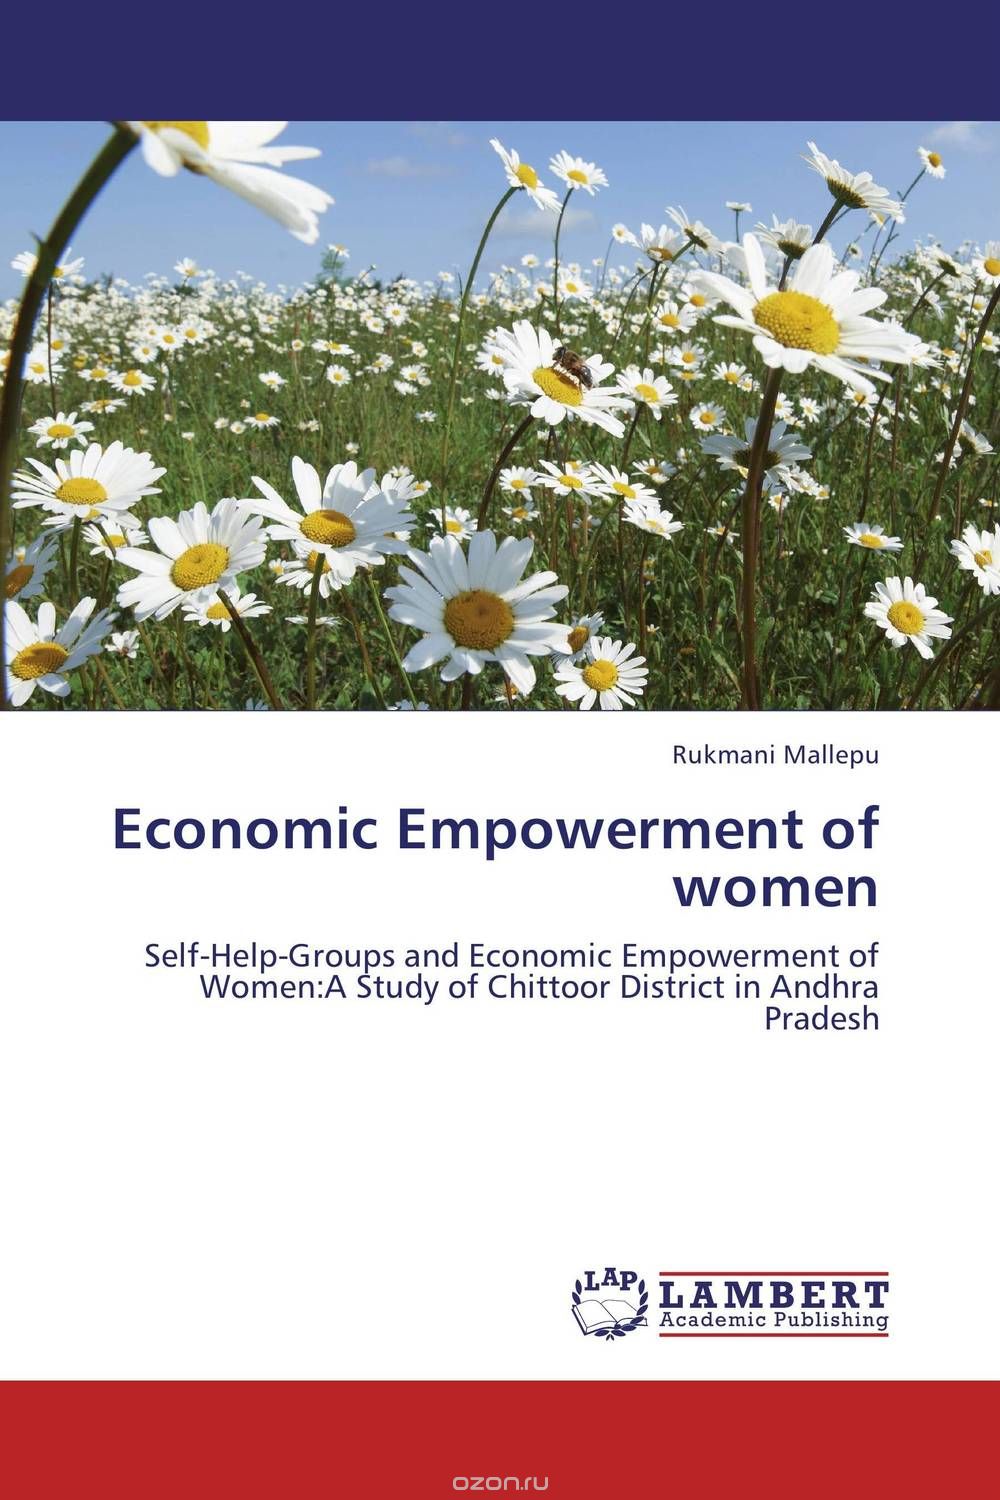 Скачать книгу "Economic Empowerment of women"